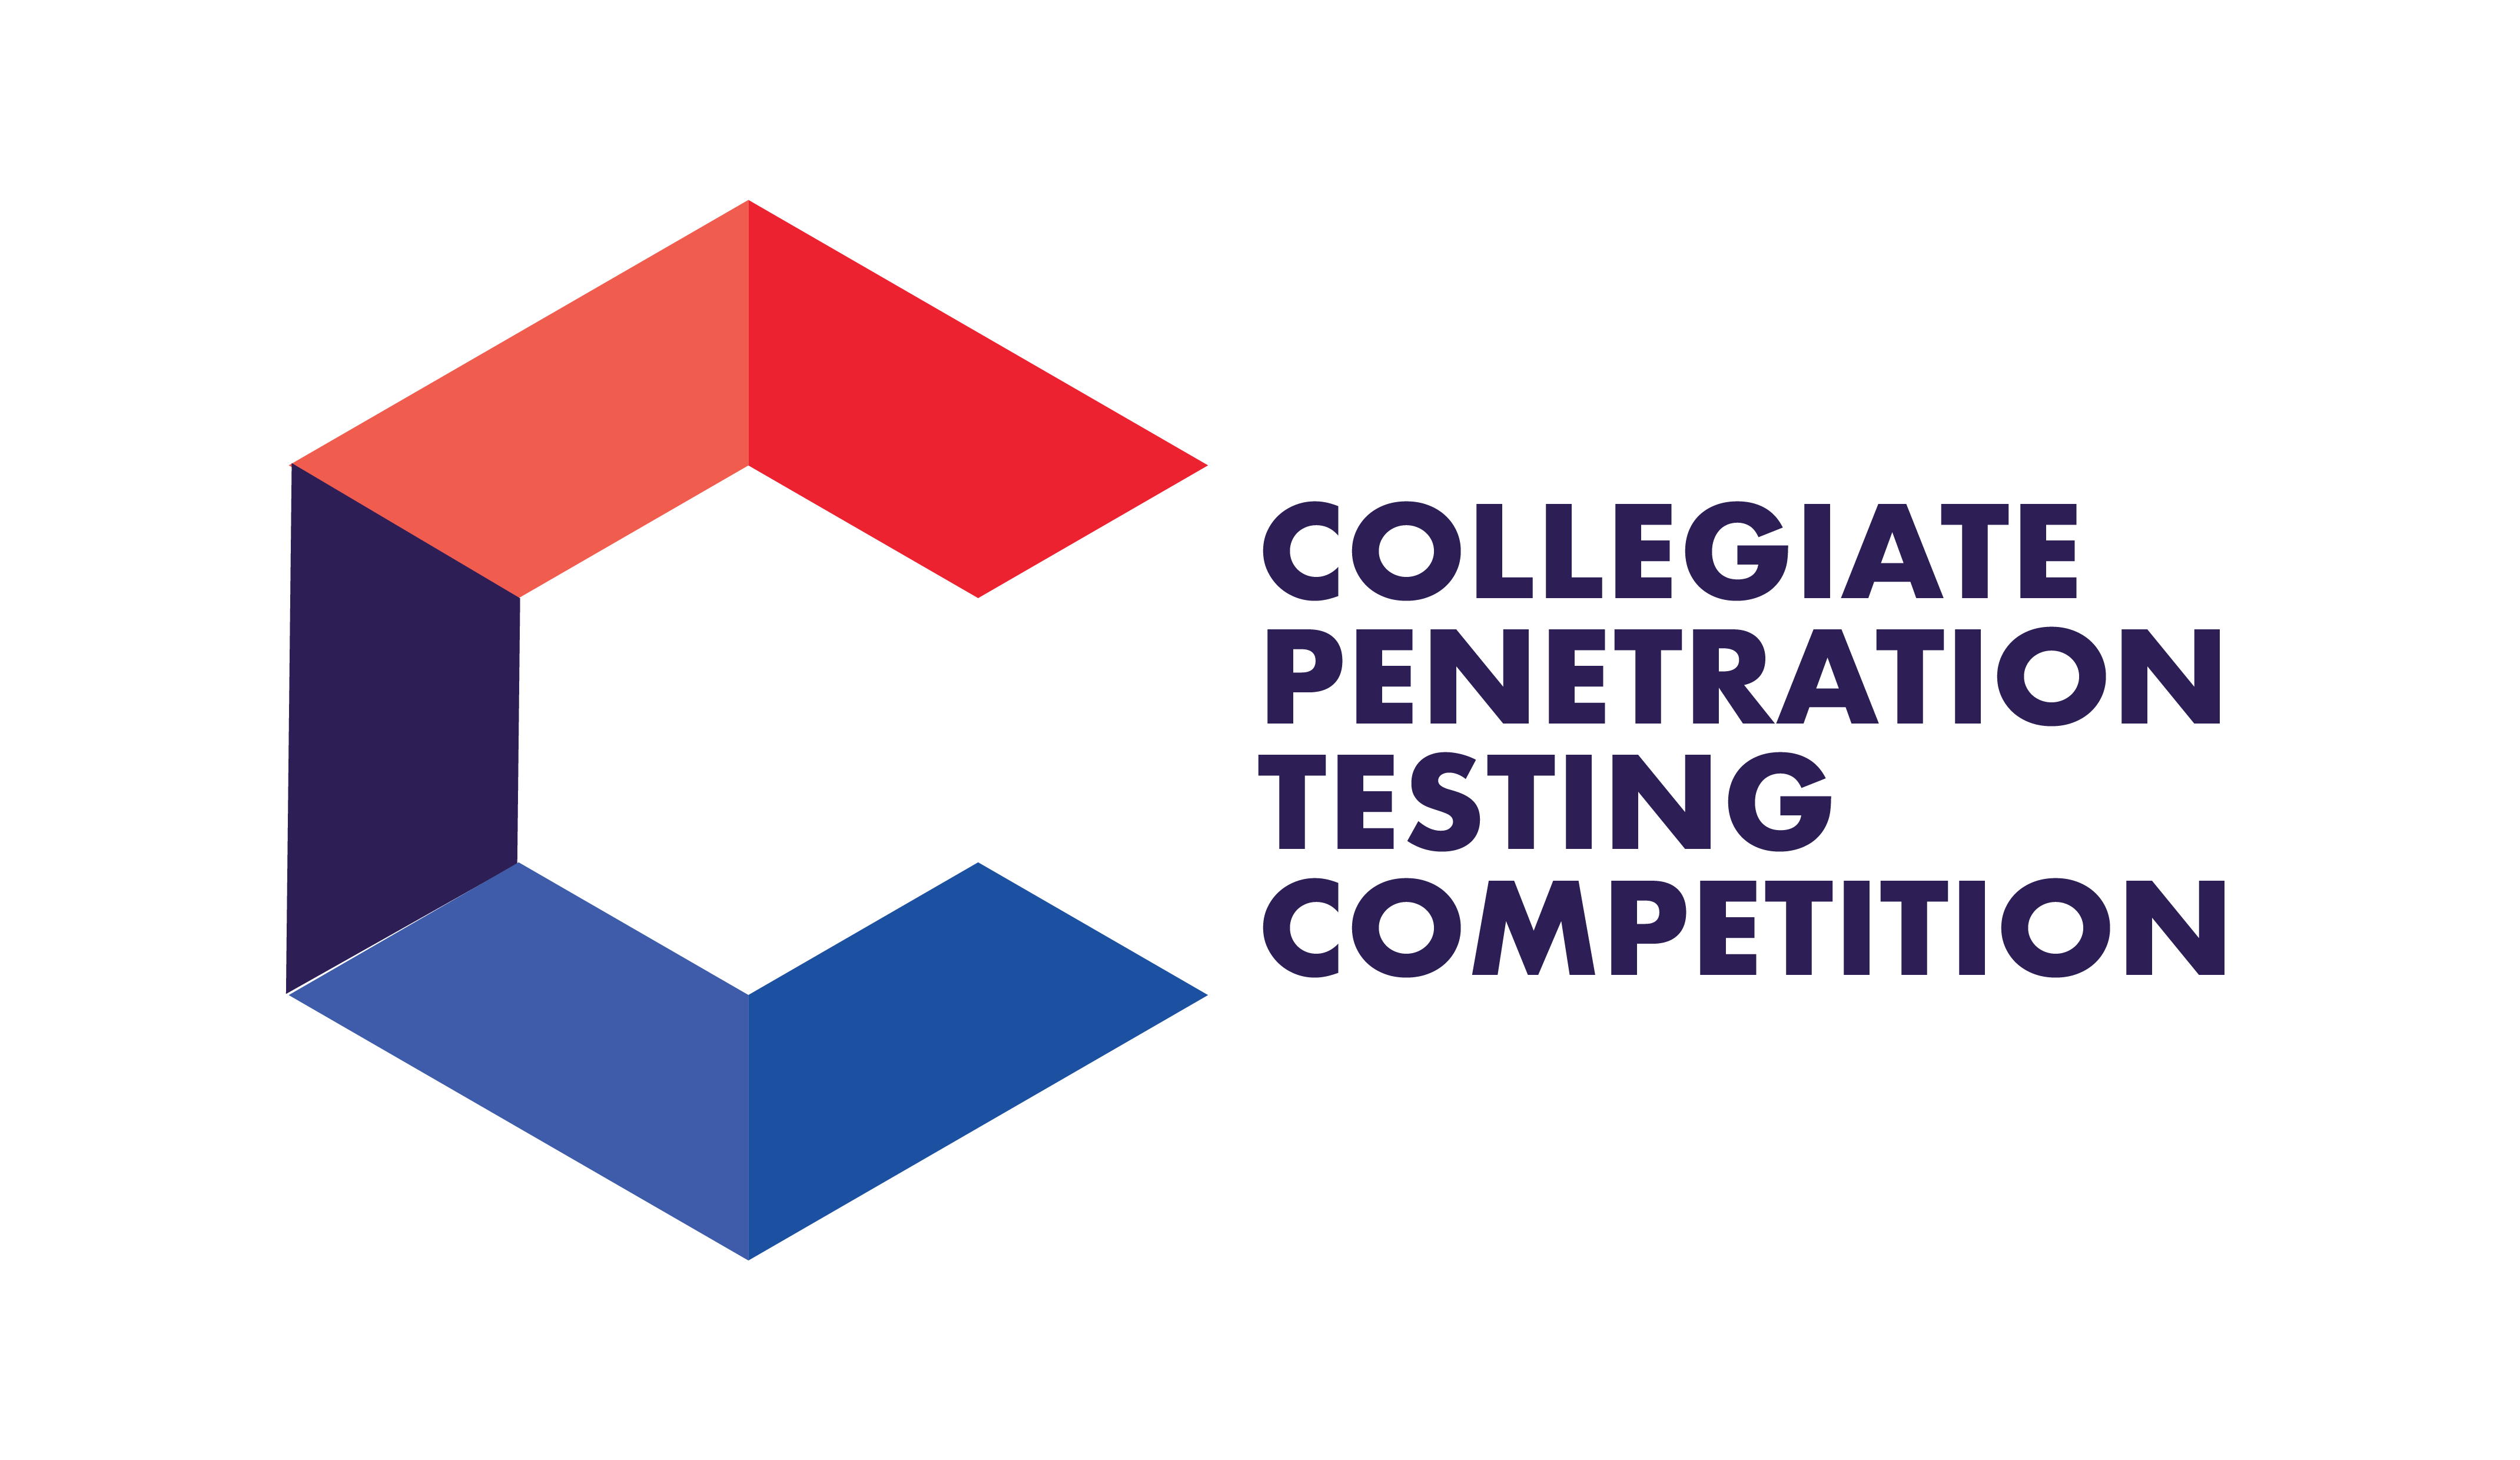 CPTC Logo